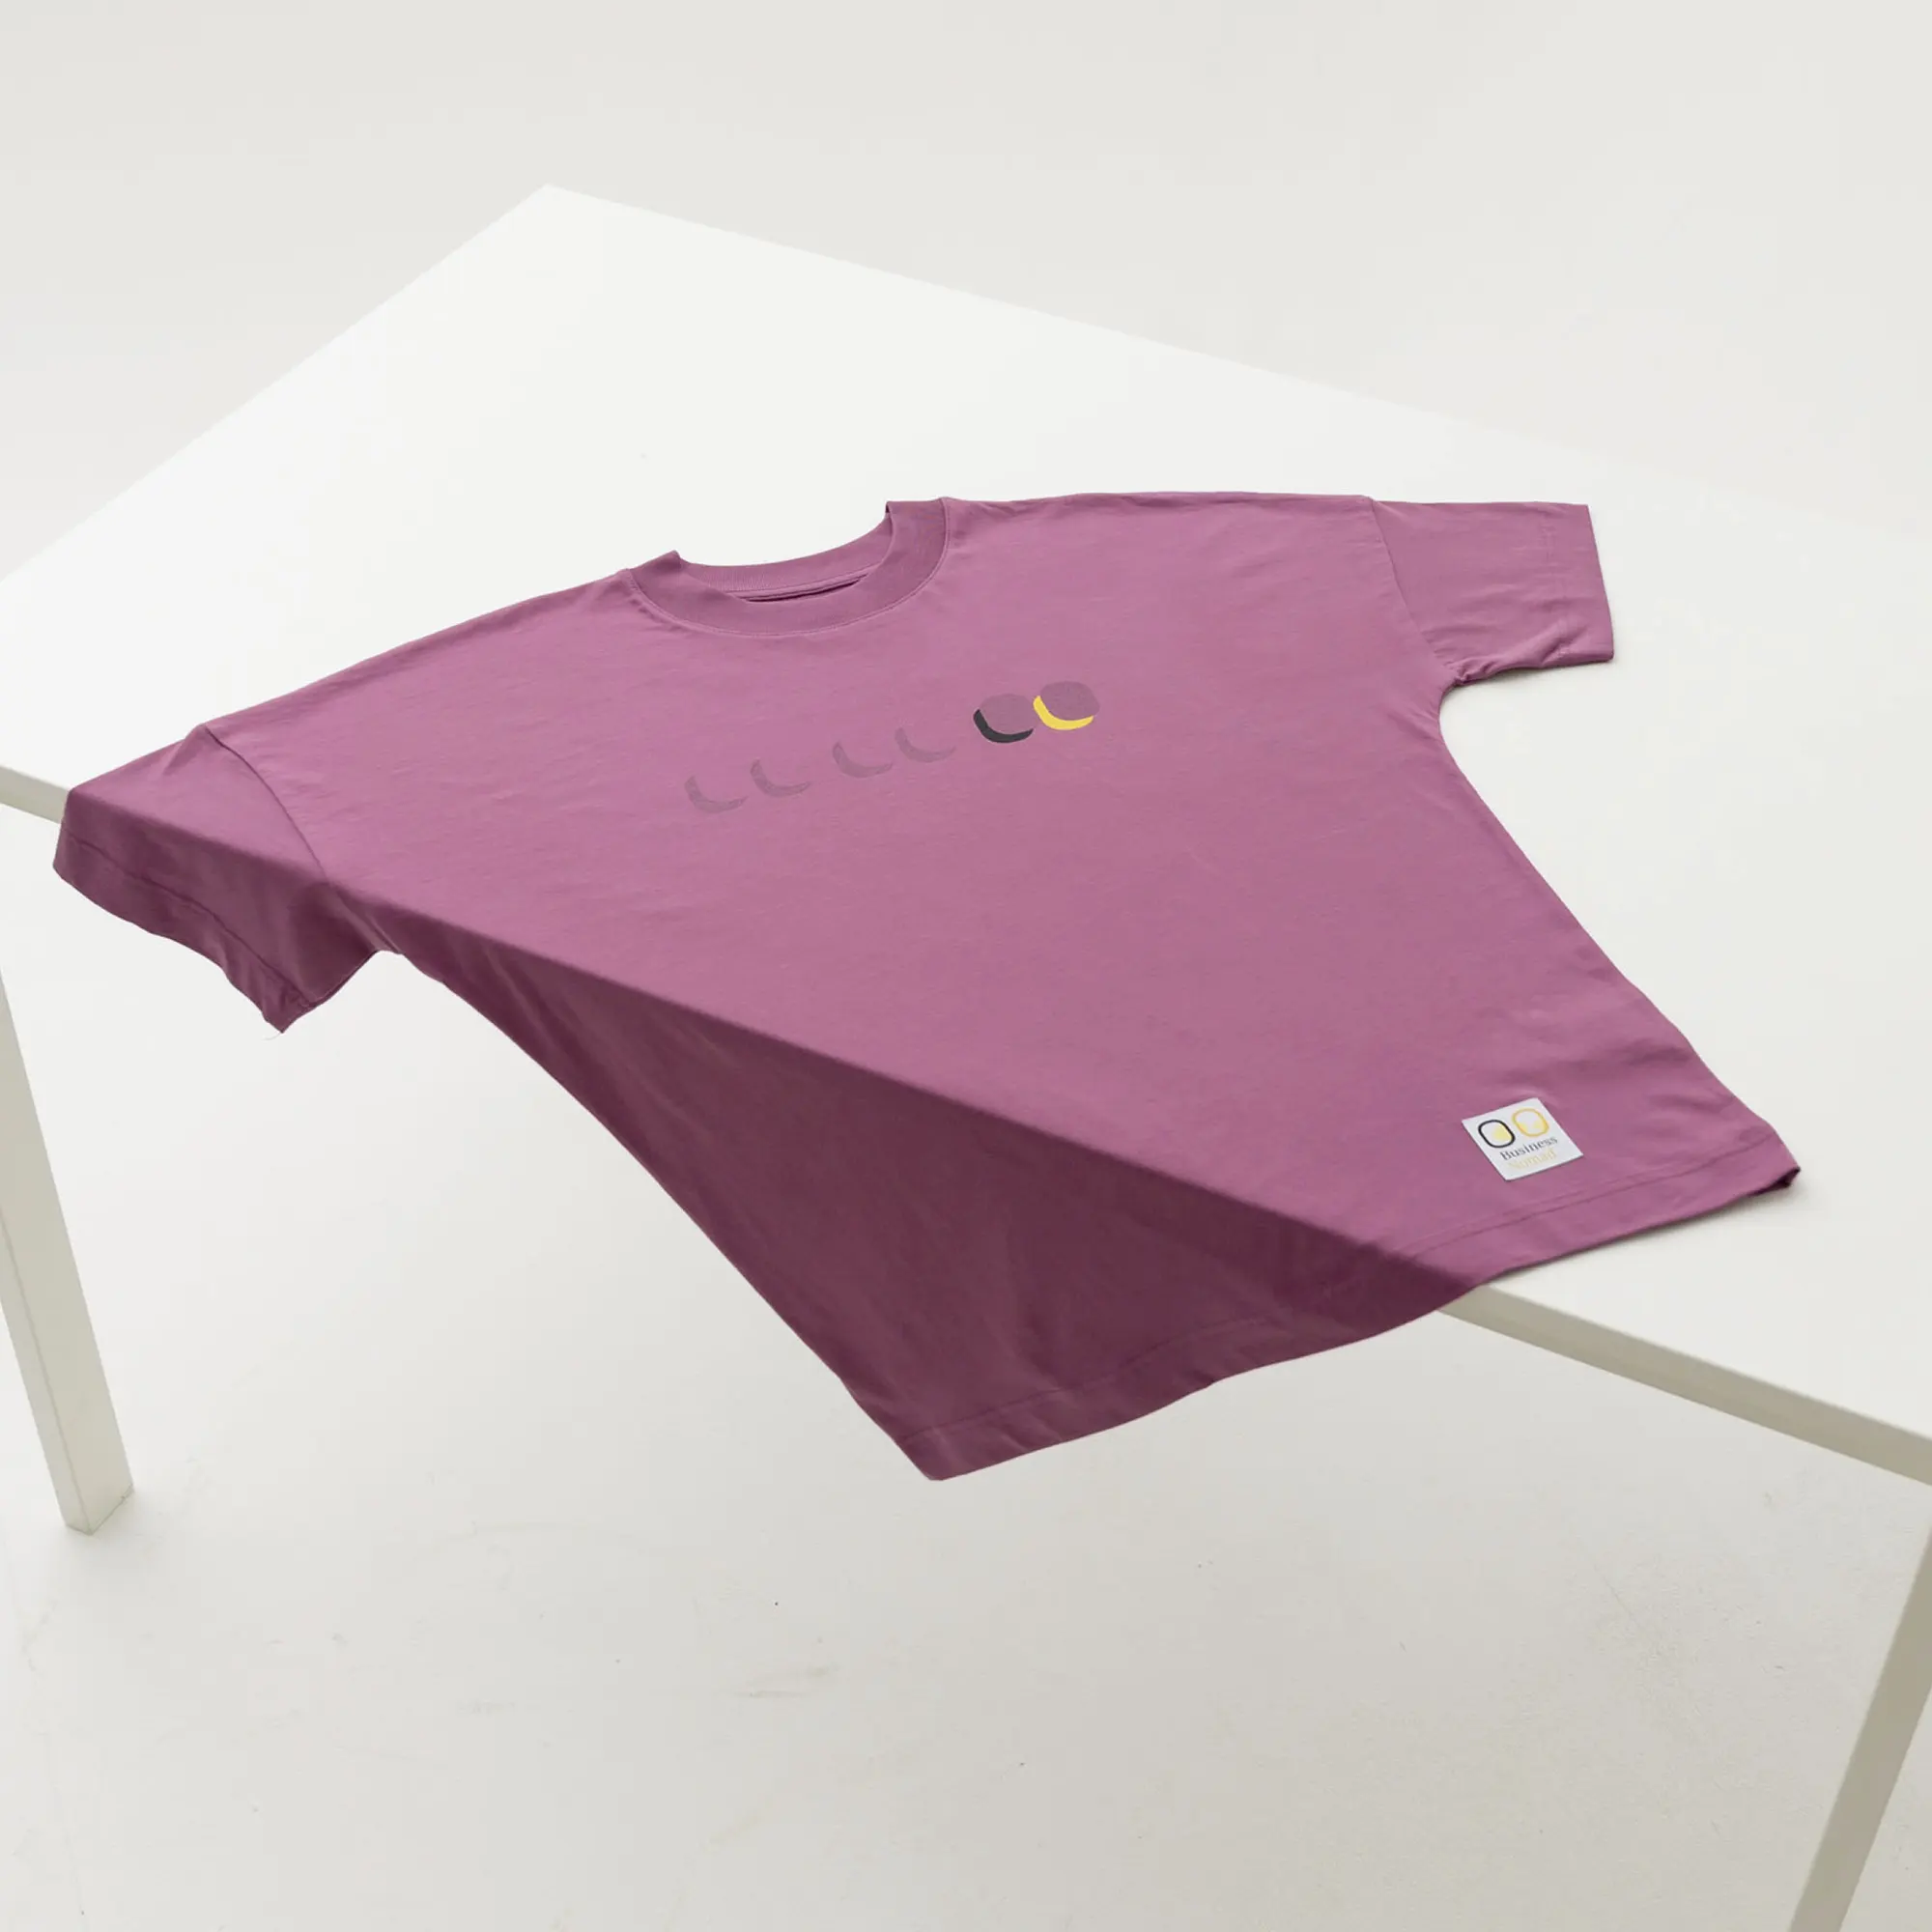 Kaufe das Executive Short Sleeve von Business Nomad: stylishes unisex oversized T-Shirt in malvenfarben aus 100% gekämmter ringgesponnener Bio-Baumwolle